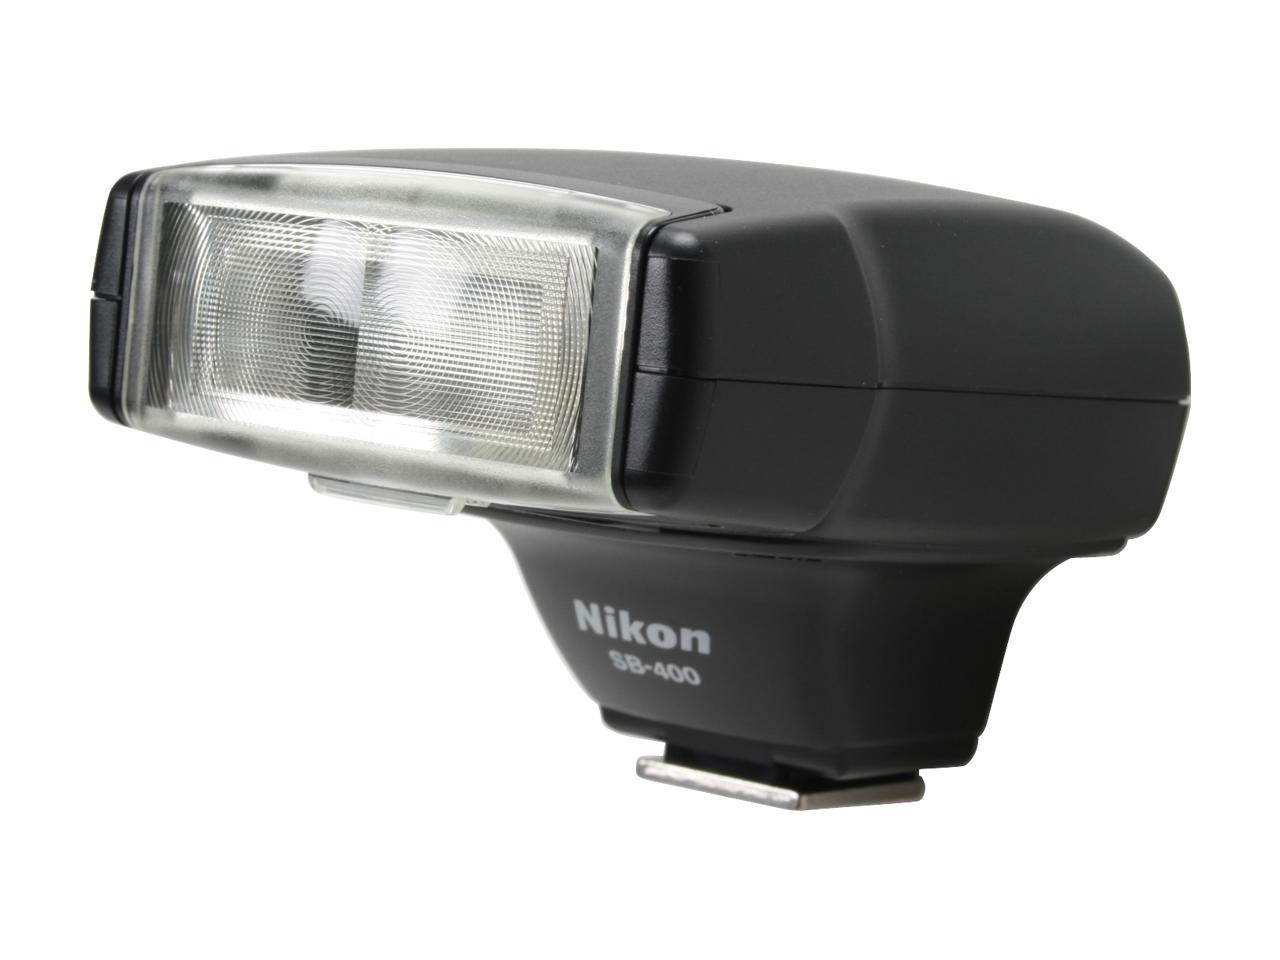 Nikon SB-400 Speedlight Flash - Newegg.com